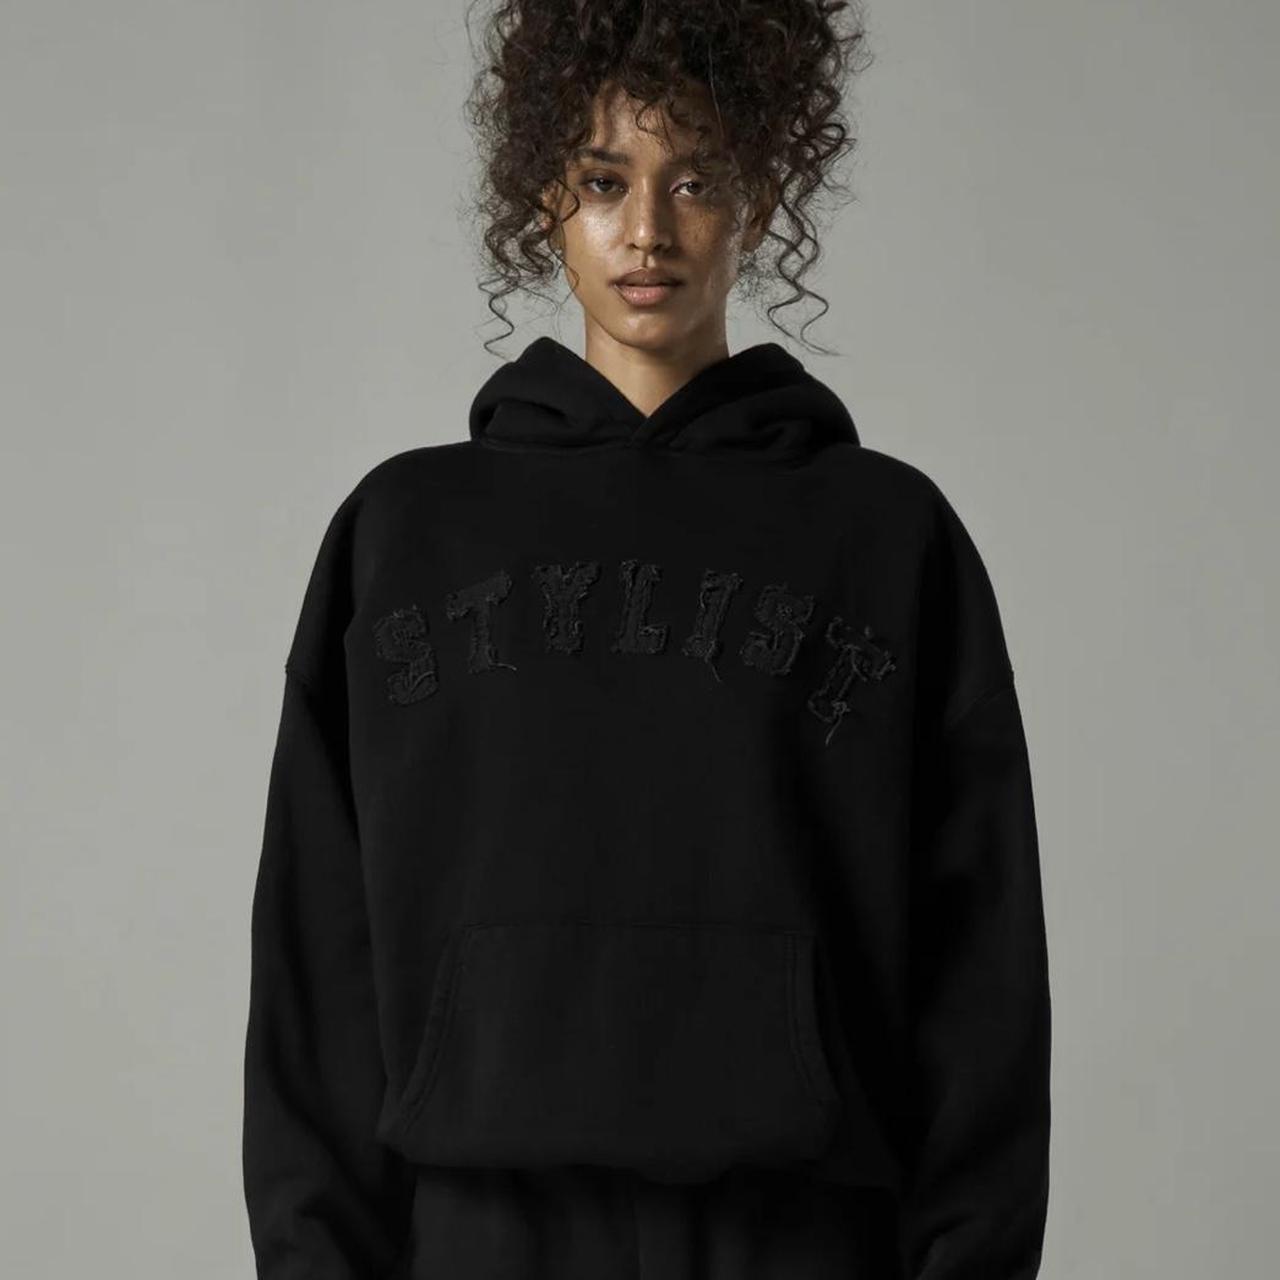 Sisters & seekers stylist black hoodie Size... - Depop